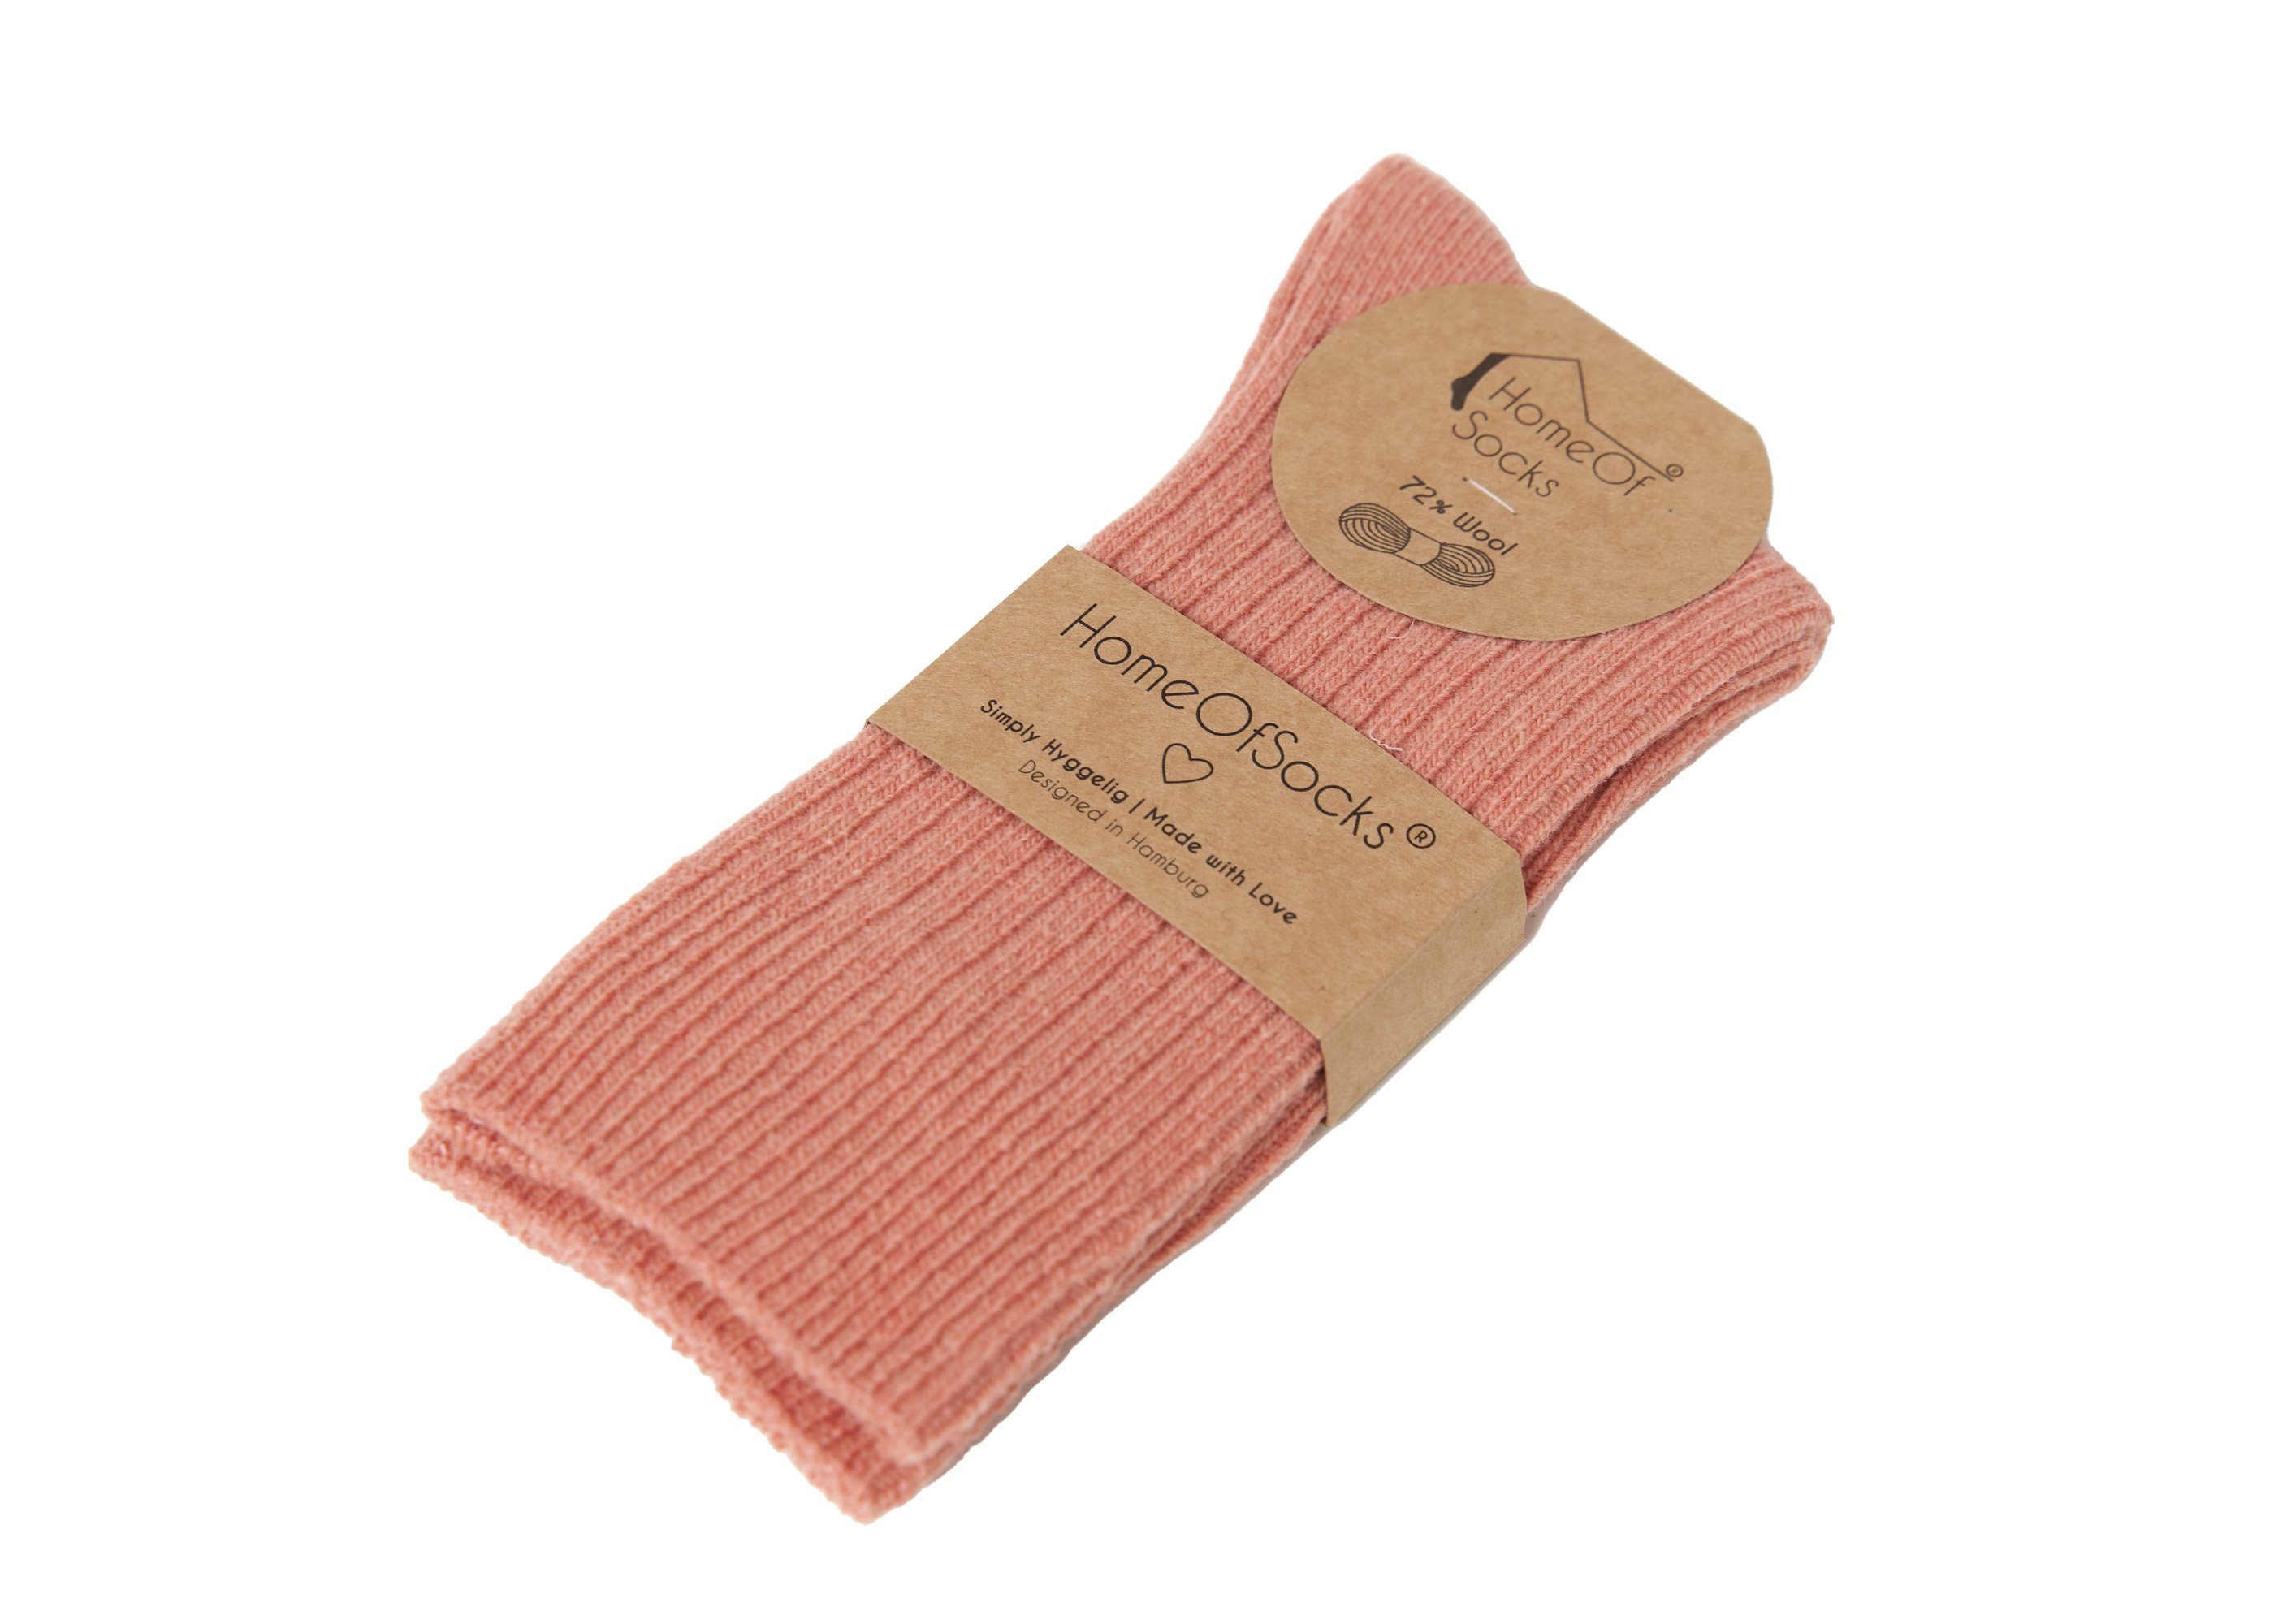 Socken mit HomeOfSocks Wollsocken 72% Wollsocken Dünn Uni Hochwertige Dünne Wollanteil Altrosa Druckarm Bunt Bunte